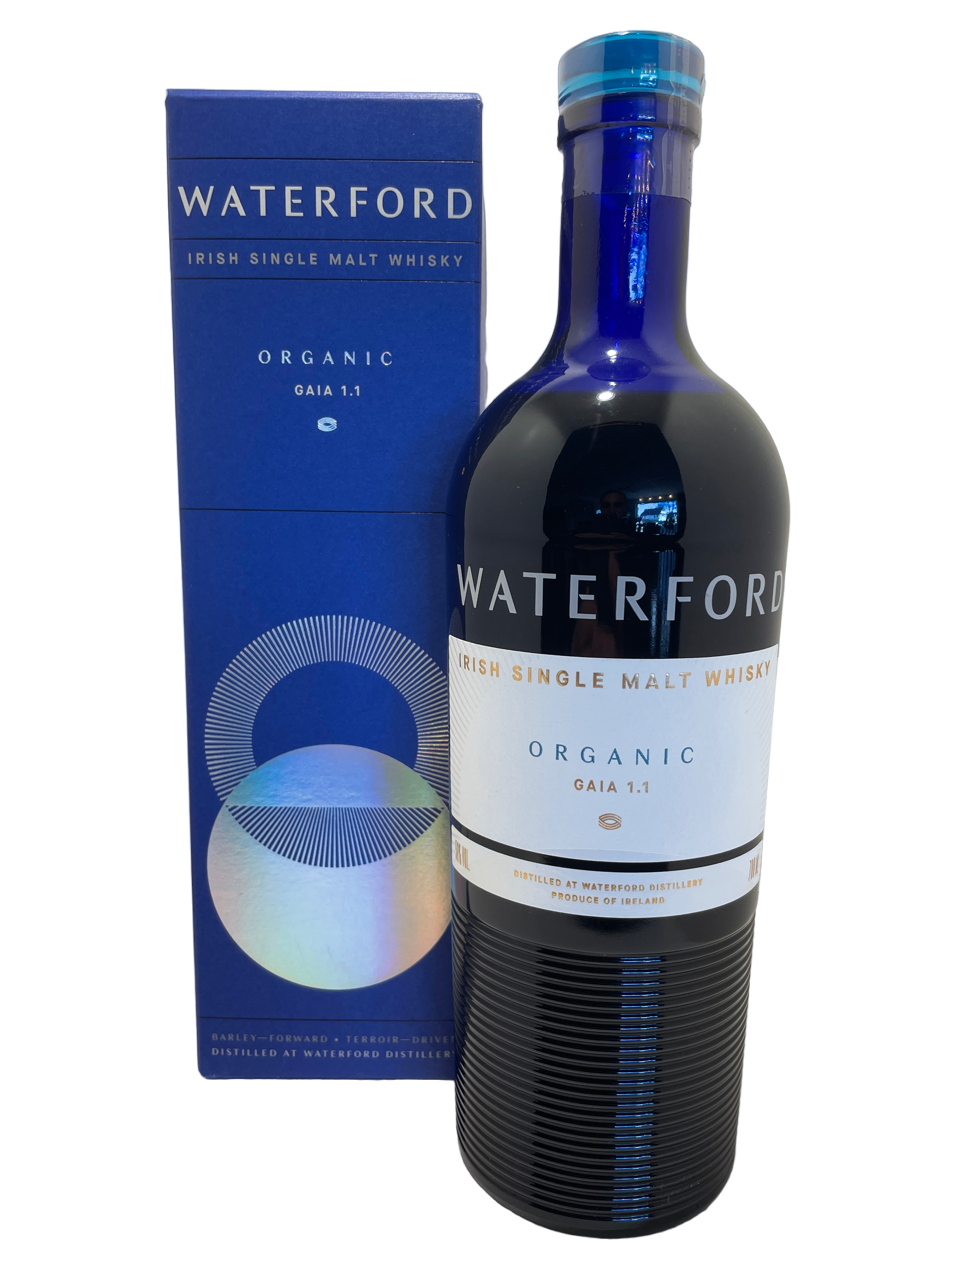 irlande spiritueux spirit irish single malt whisky organic gaia 1.1 waterford